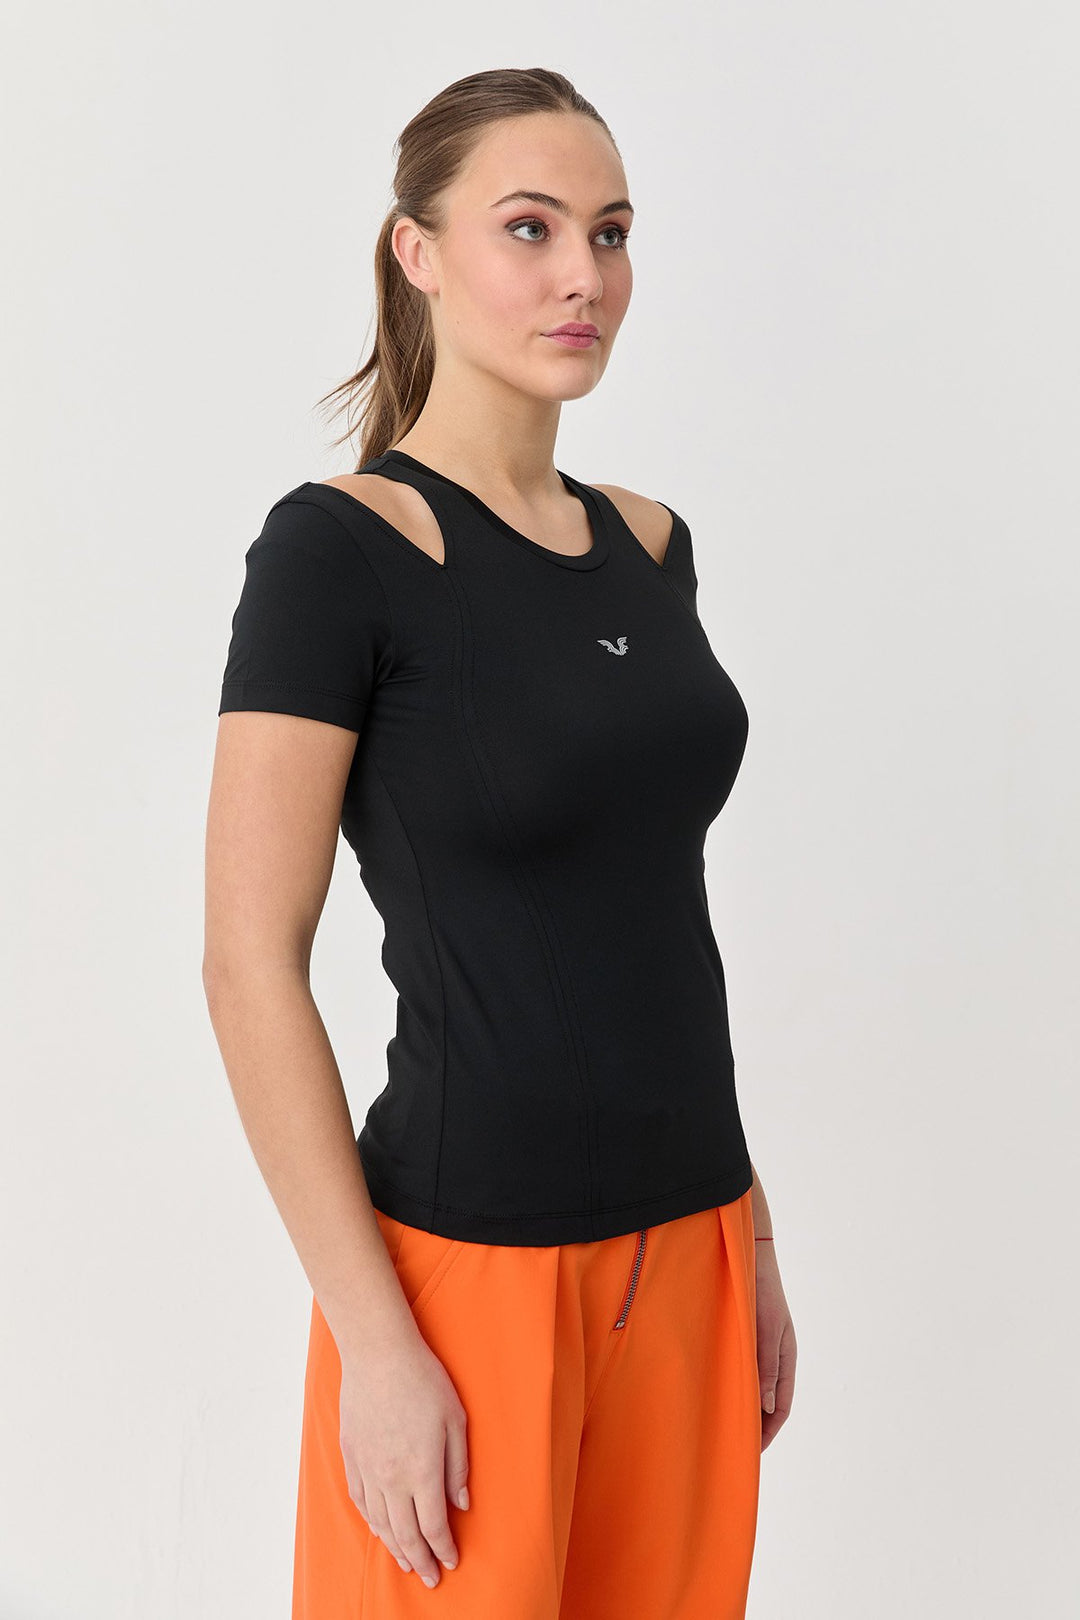 Weiches, strukturiertes Body-T-Shirt für Damen